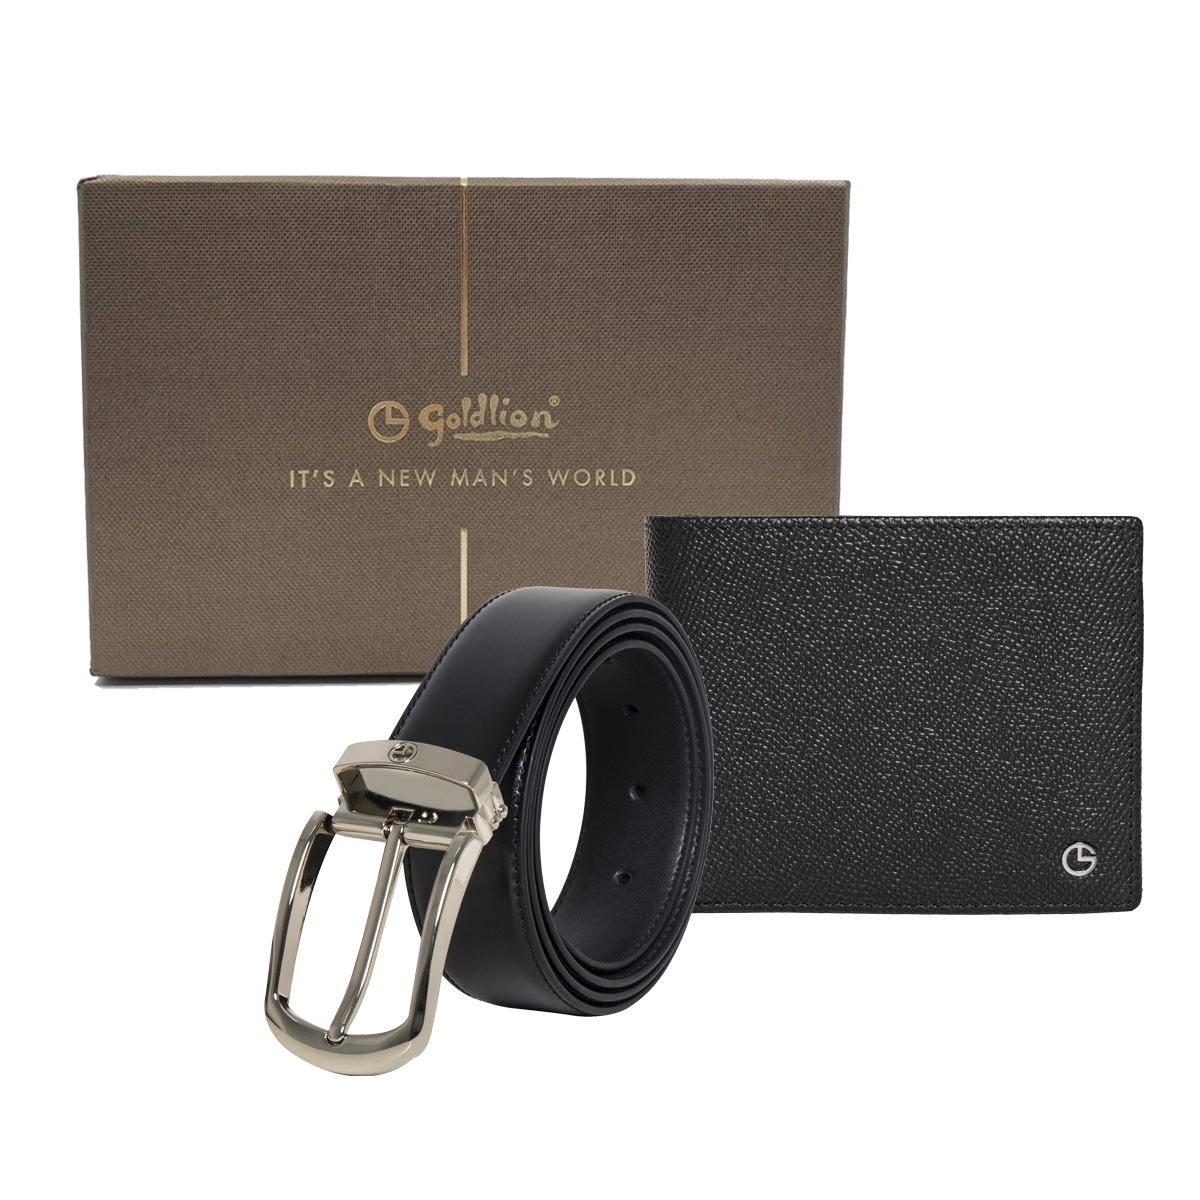 [Online Exclusive] Goldlion Genuine Leather 3 Cards Slot Wallet & Pin Belt Gift Set